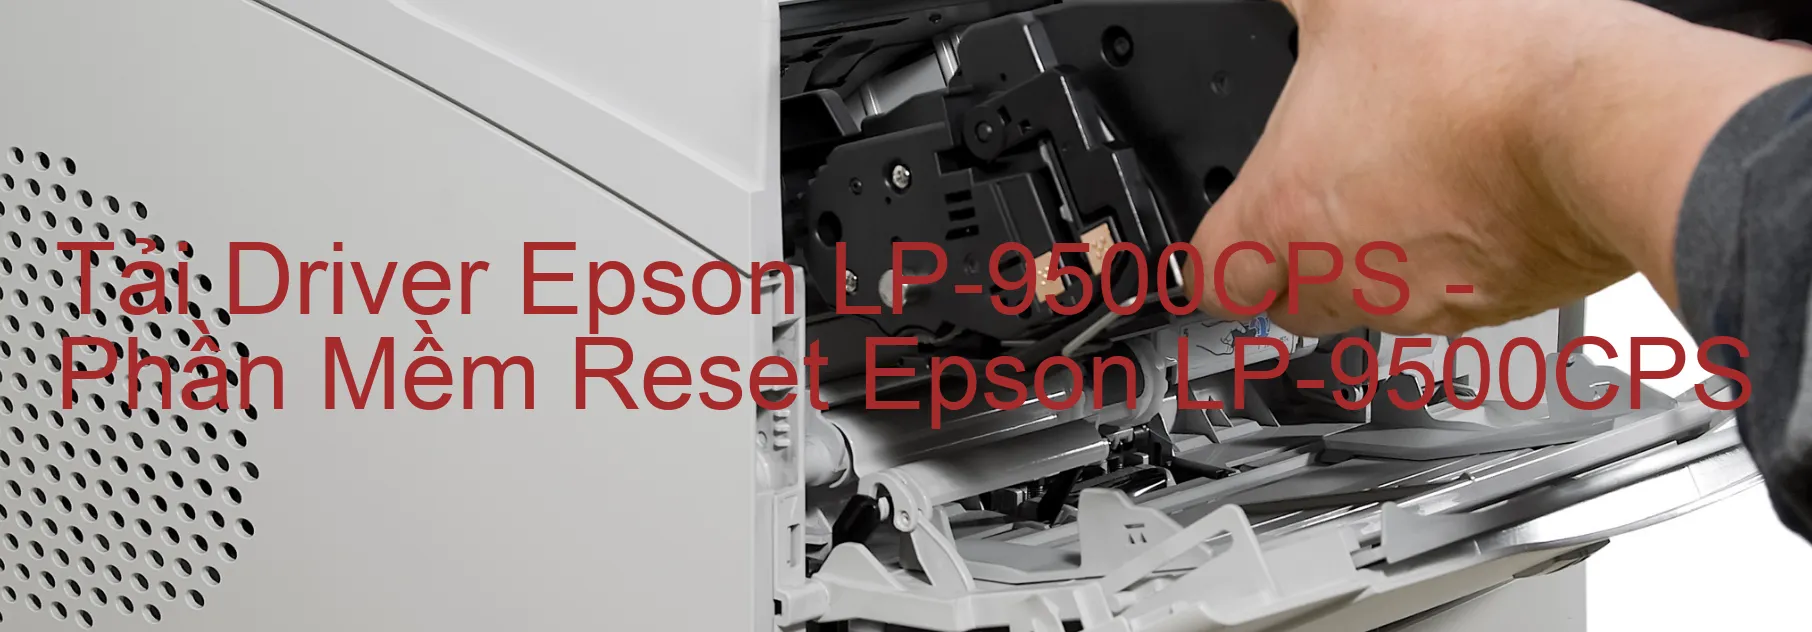 Driver Epson LP-9500CPS, Phần Mềm Reset Epson LP-9500CPS